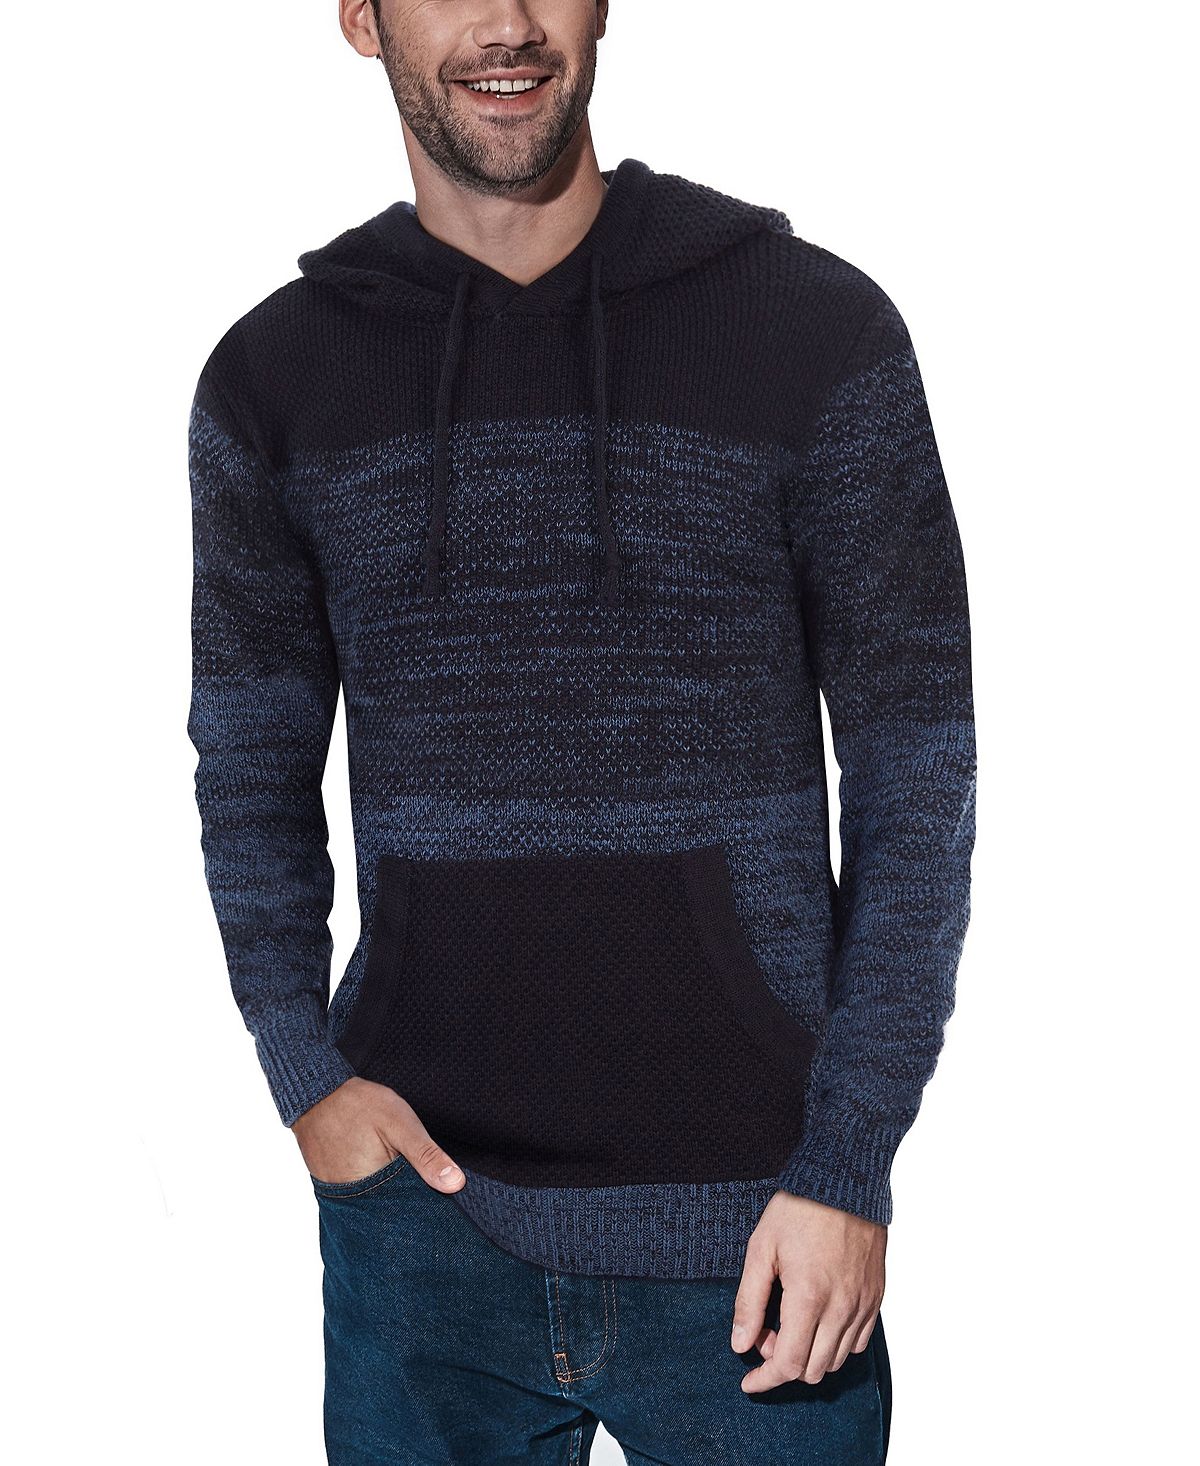 Мужской свитер с капюшоном в стиле цветных блоков X-Ray, синий